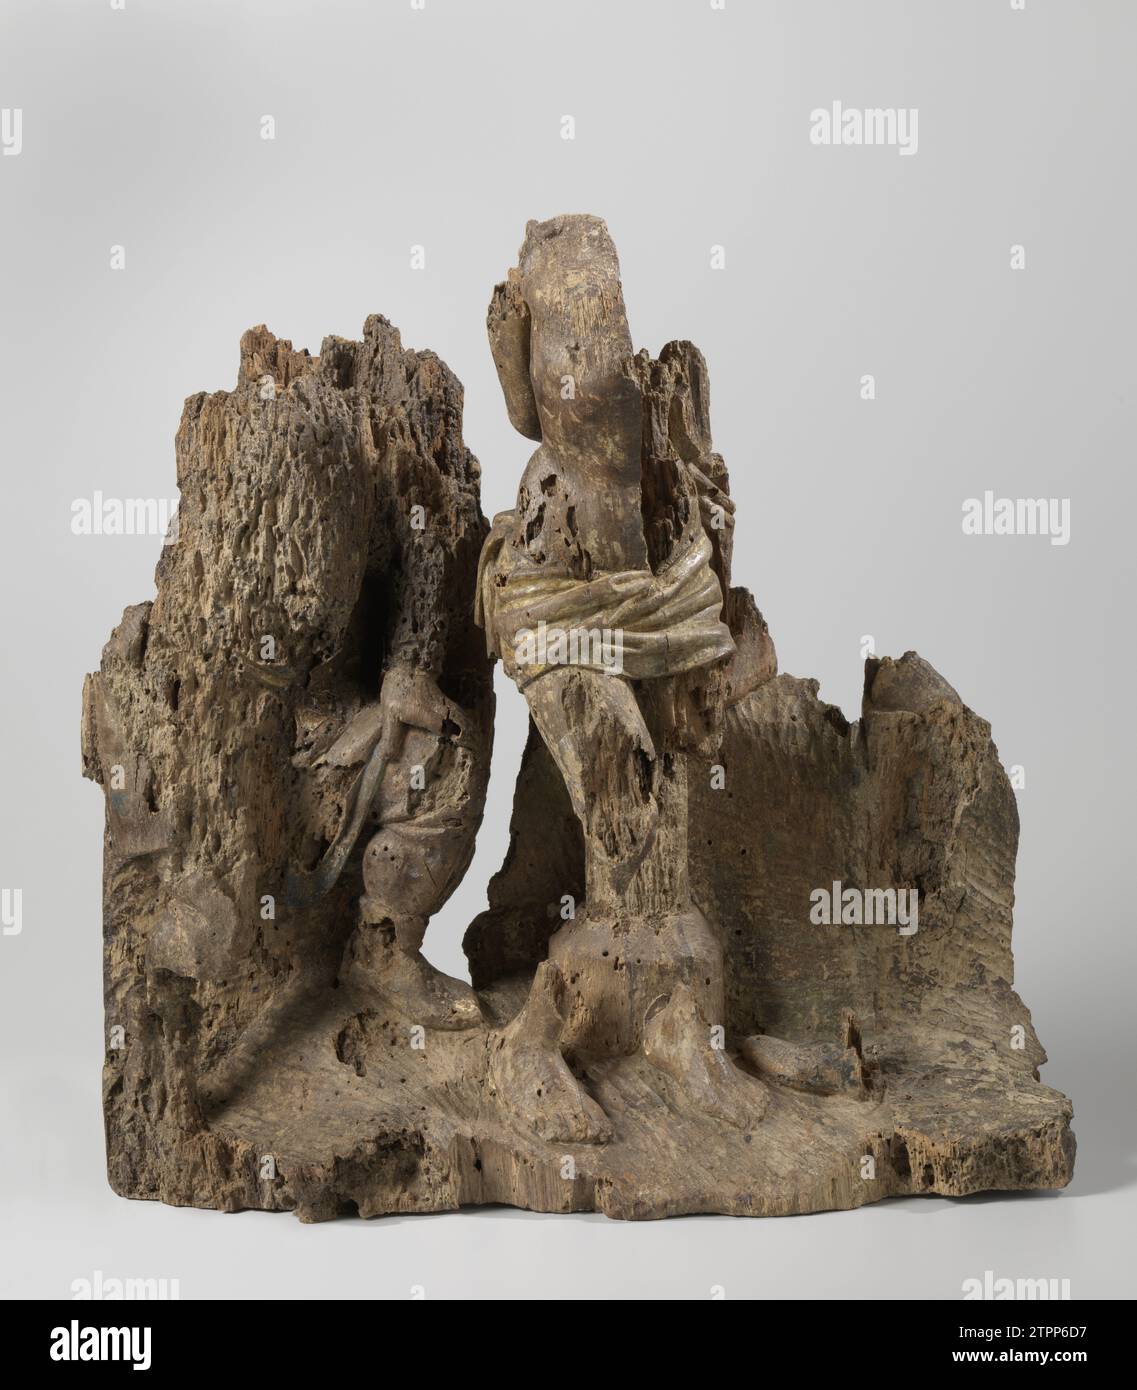 Die Geißelung, aus dem Soester Altar, Meister des Soester Altars, um 1475 - um 1500 auf einem aufsteigenden Boden für die Geißelsäule die Füße Christi und einen Teil seines Körpers; links ein Henker, gestützt mit der linken Hand auf dem nach vorne gebeugten Knie. Utrechter Eiche (Holz), die auf einem aufsteigenden Boden für die Geißelsäule die Füße Christi und einen Teil seines Körpers vergoldet; links ein Henker, der mit der linken Hand auf dem nach vorne gebeugten Knie gestützt wird. Utrechter Eiche (Holz) Vergoldung Stockfoto